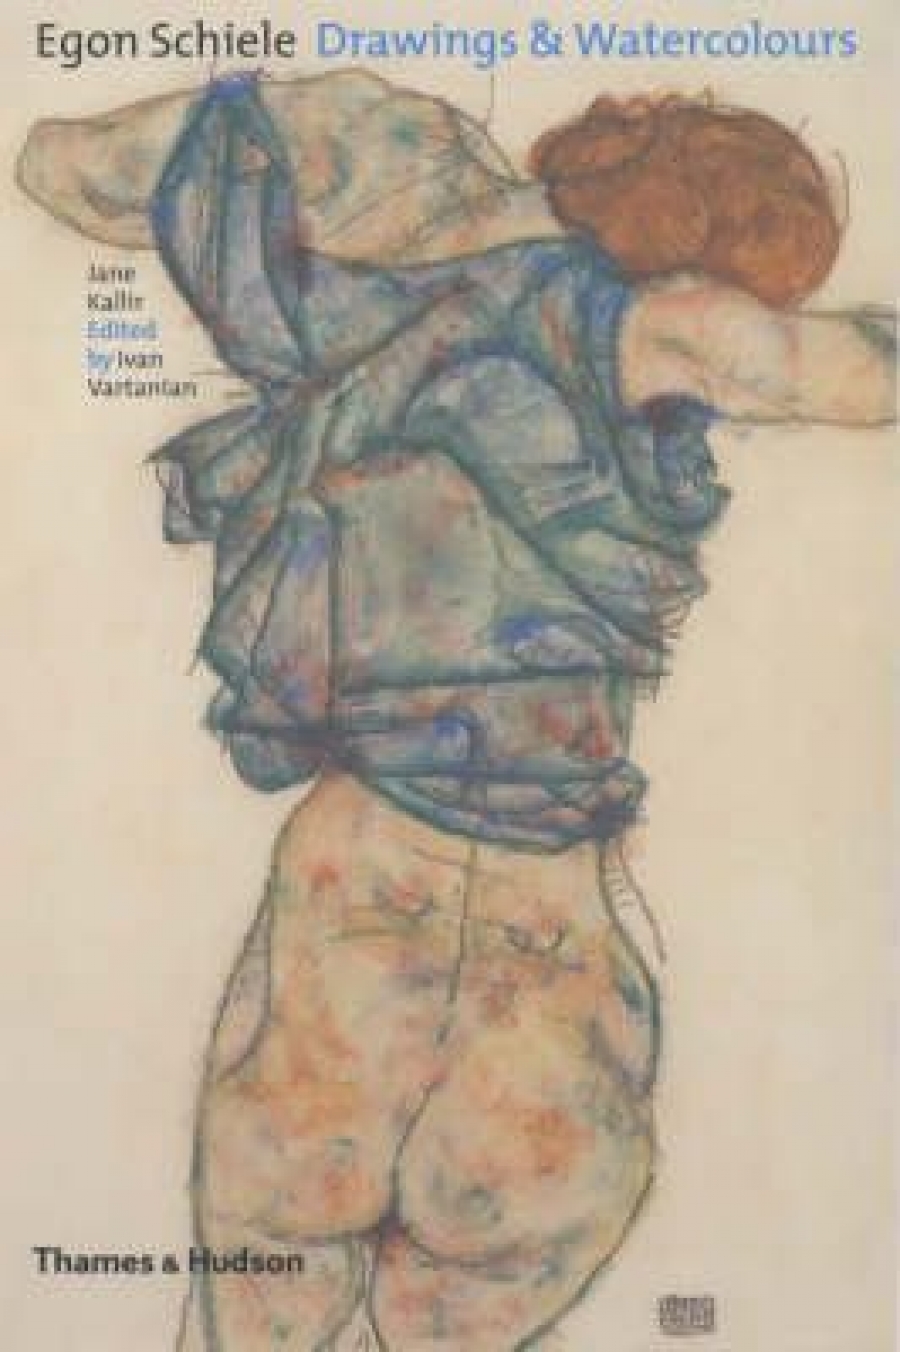 Jane Kallir Egon Schiele: Drawings & Watercolours 